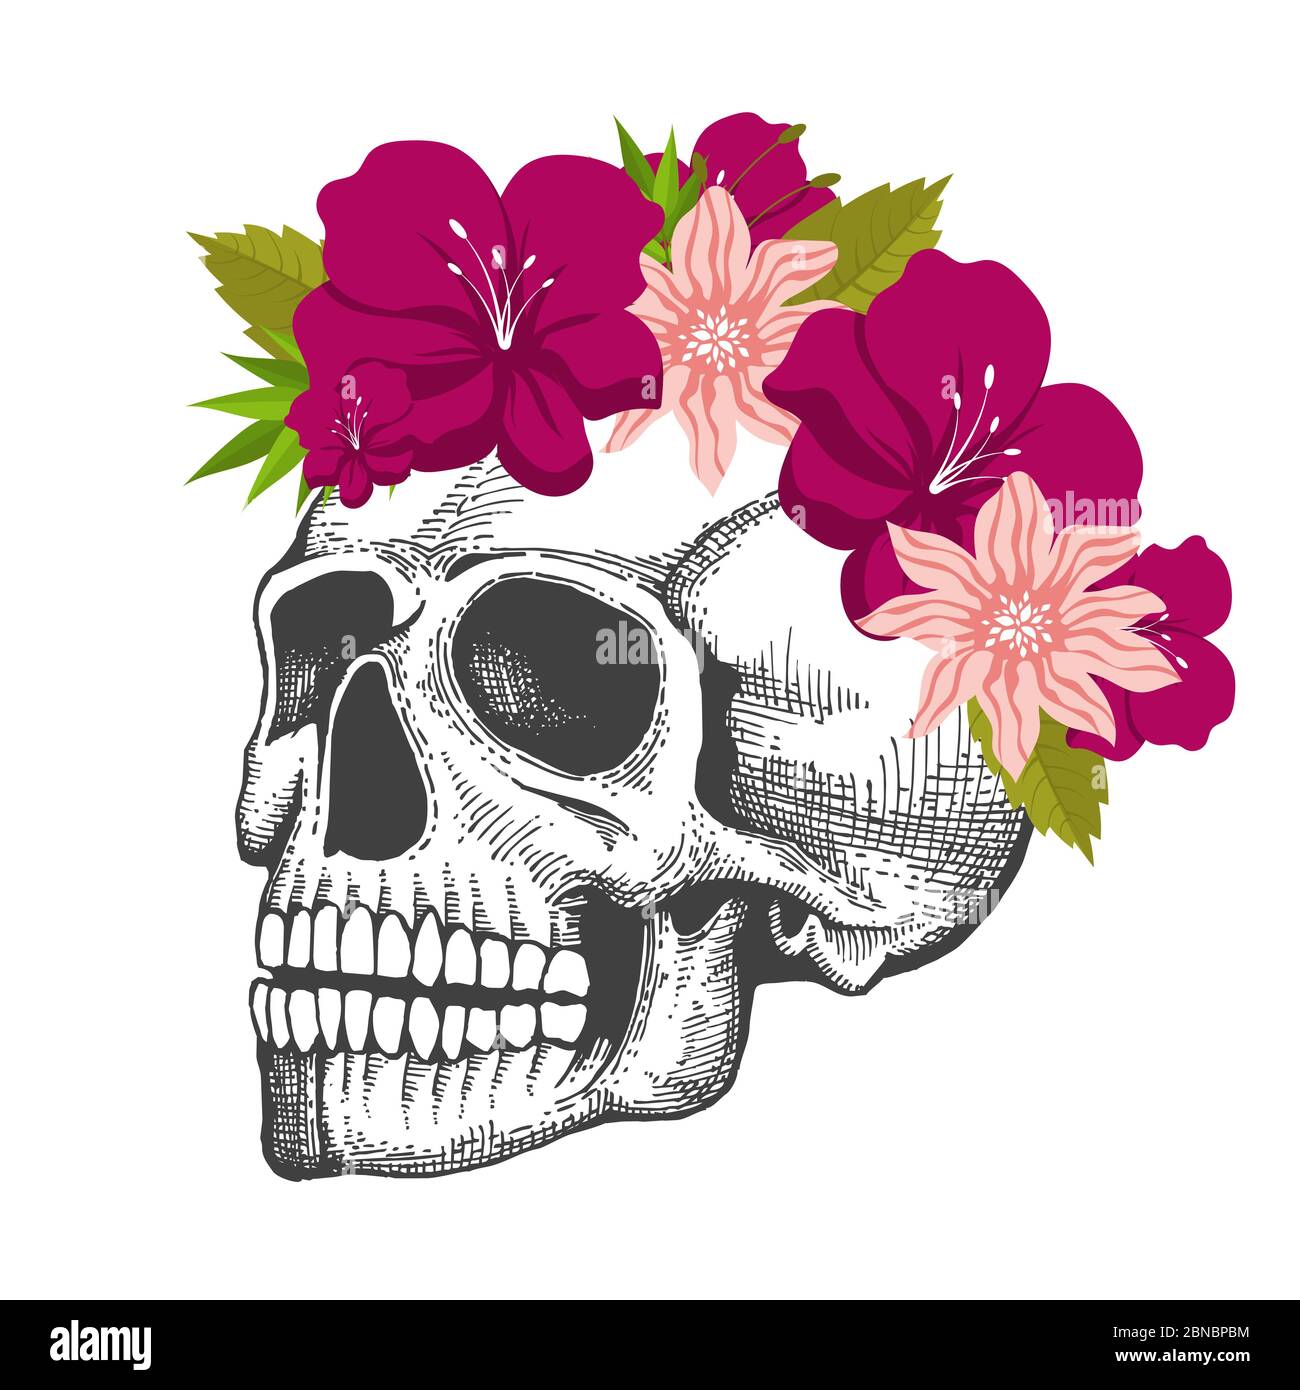 Croquis du crâne humain avec couronne à fleurs isolée sur fond blanc isolée sur illustration blanche Illustration de Vecteur